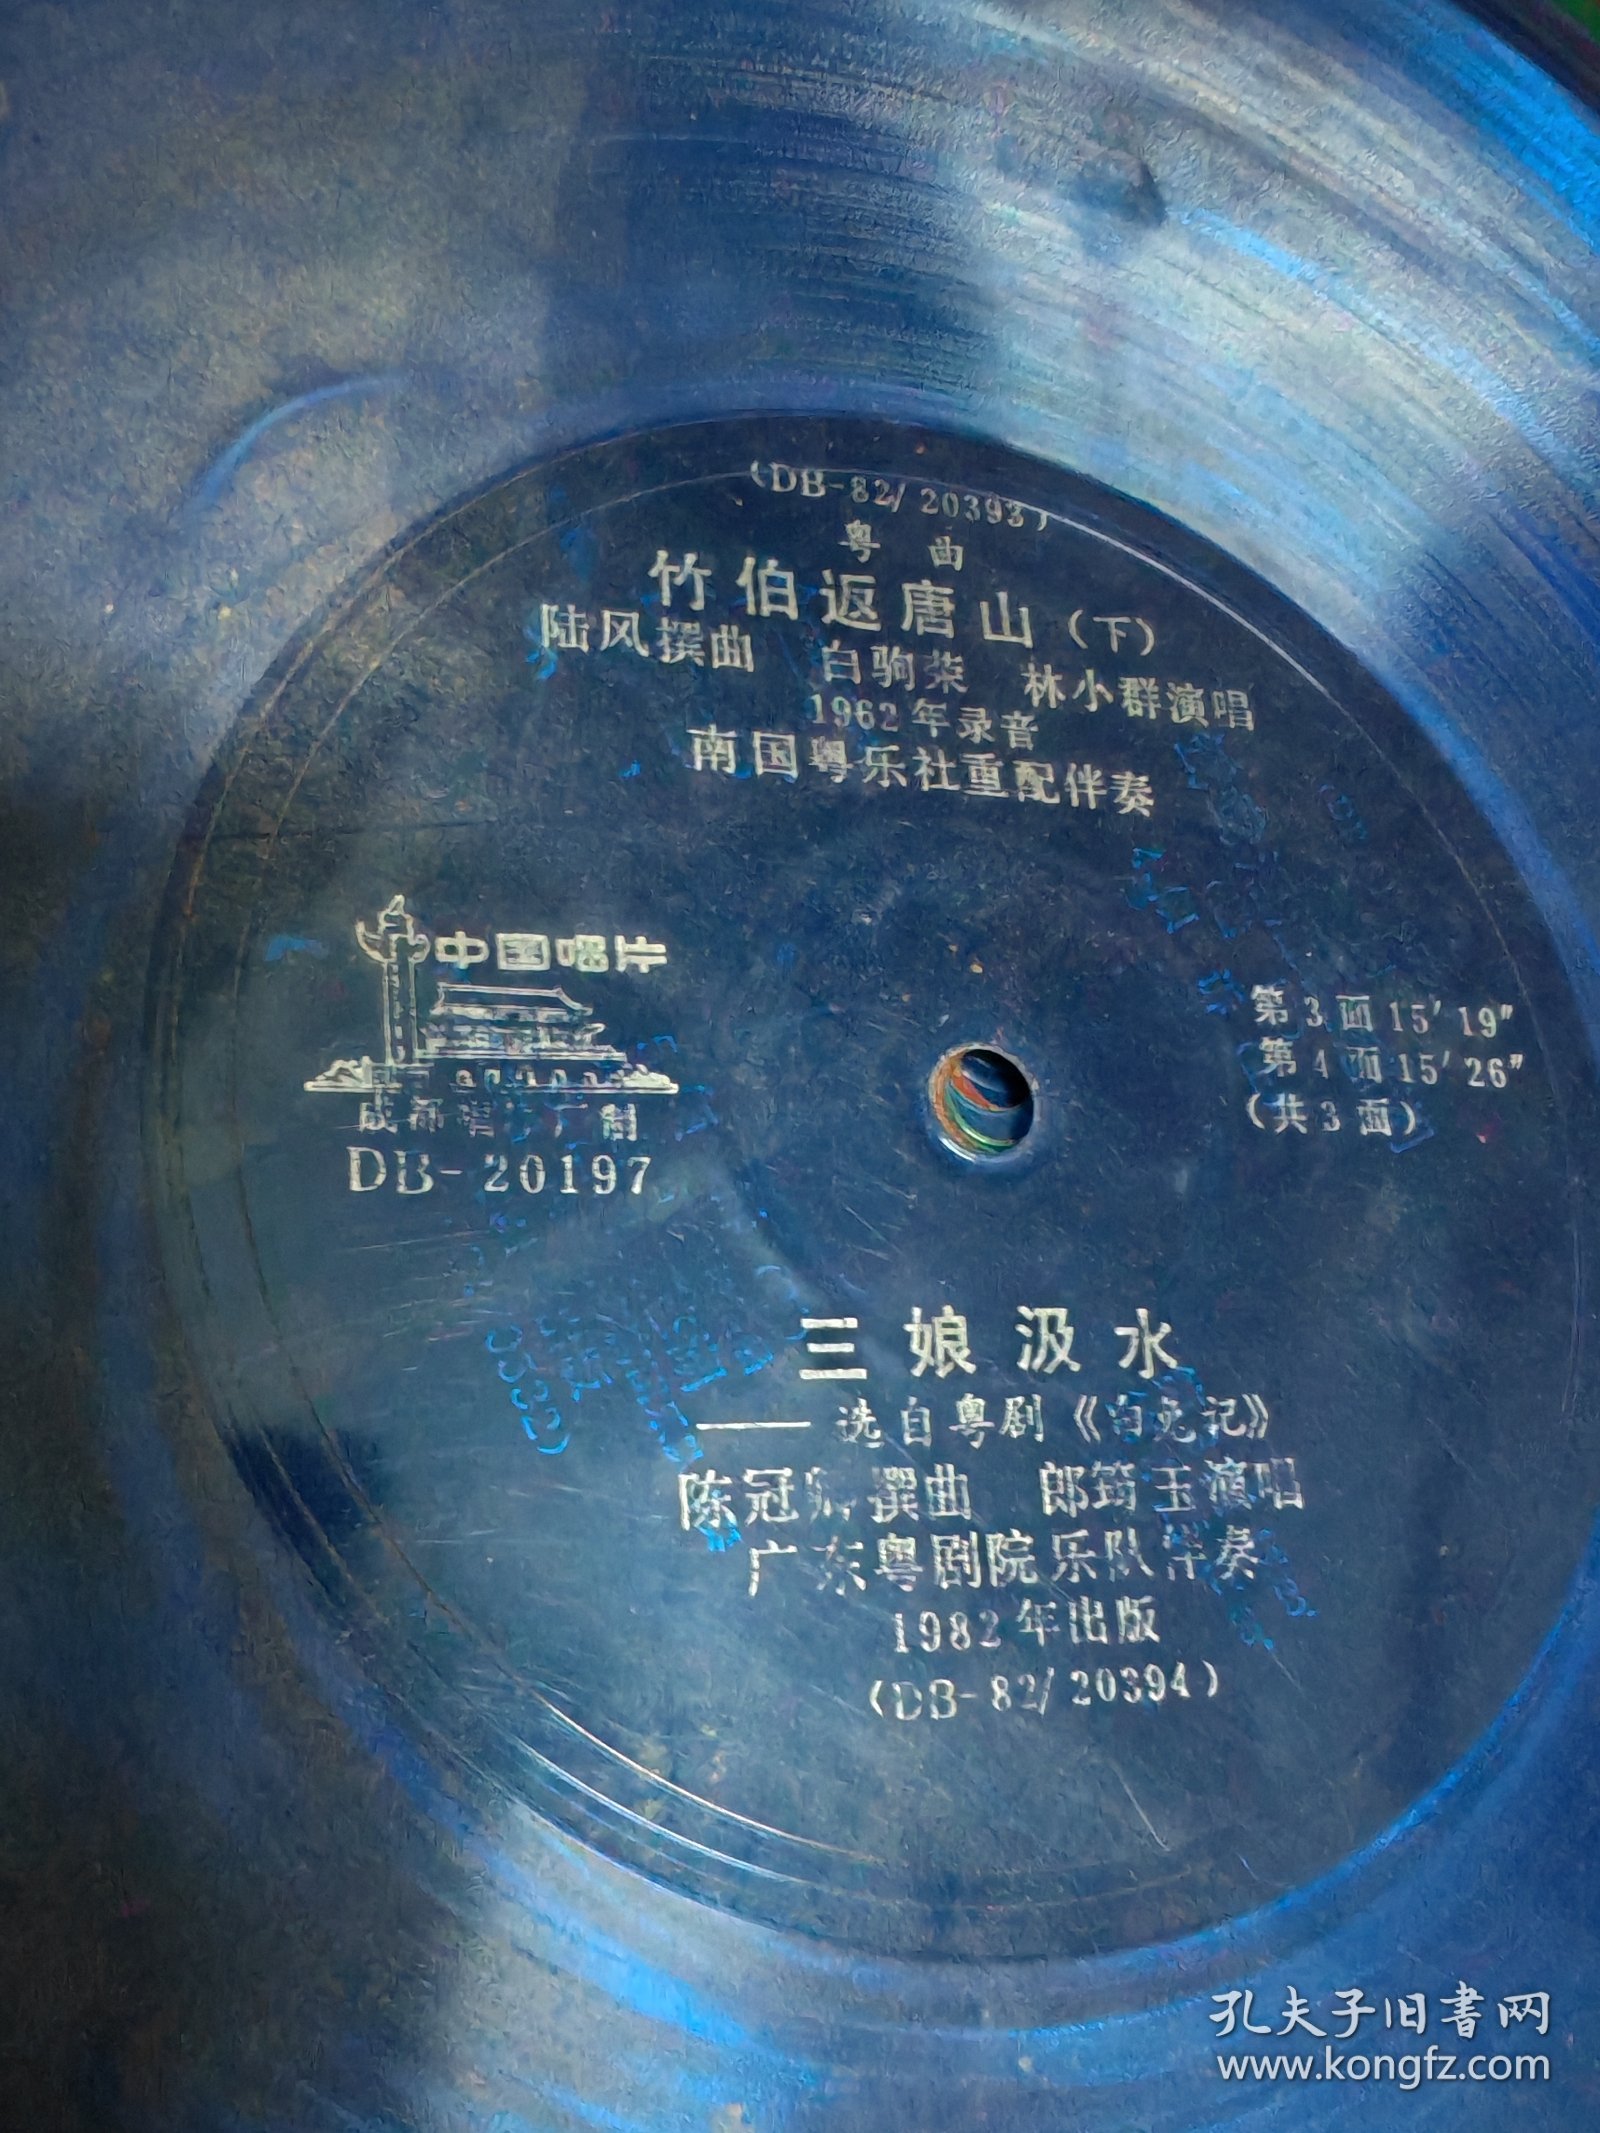 100多张老唱片“1958年姚苏蓉流行歌曲（海山唱片公司）